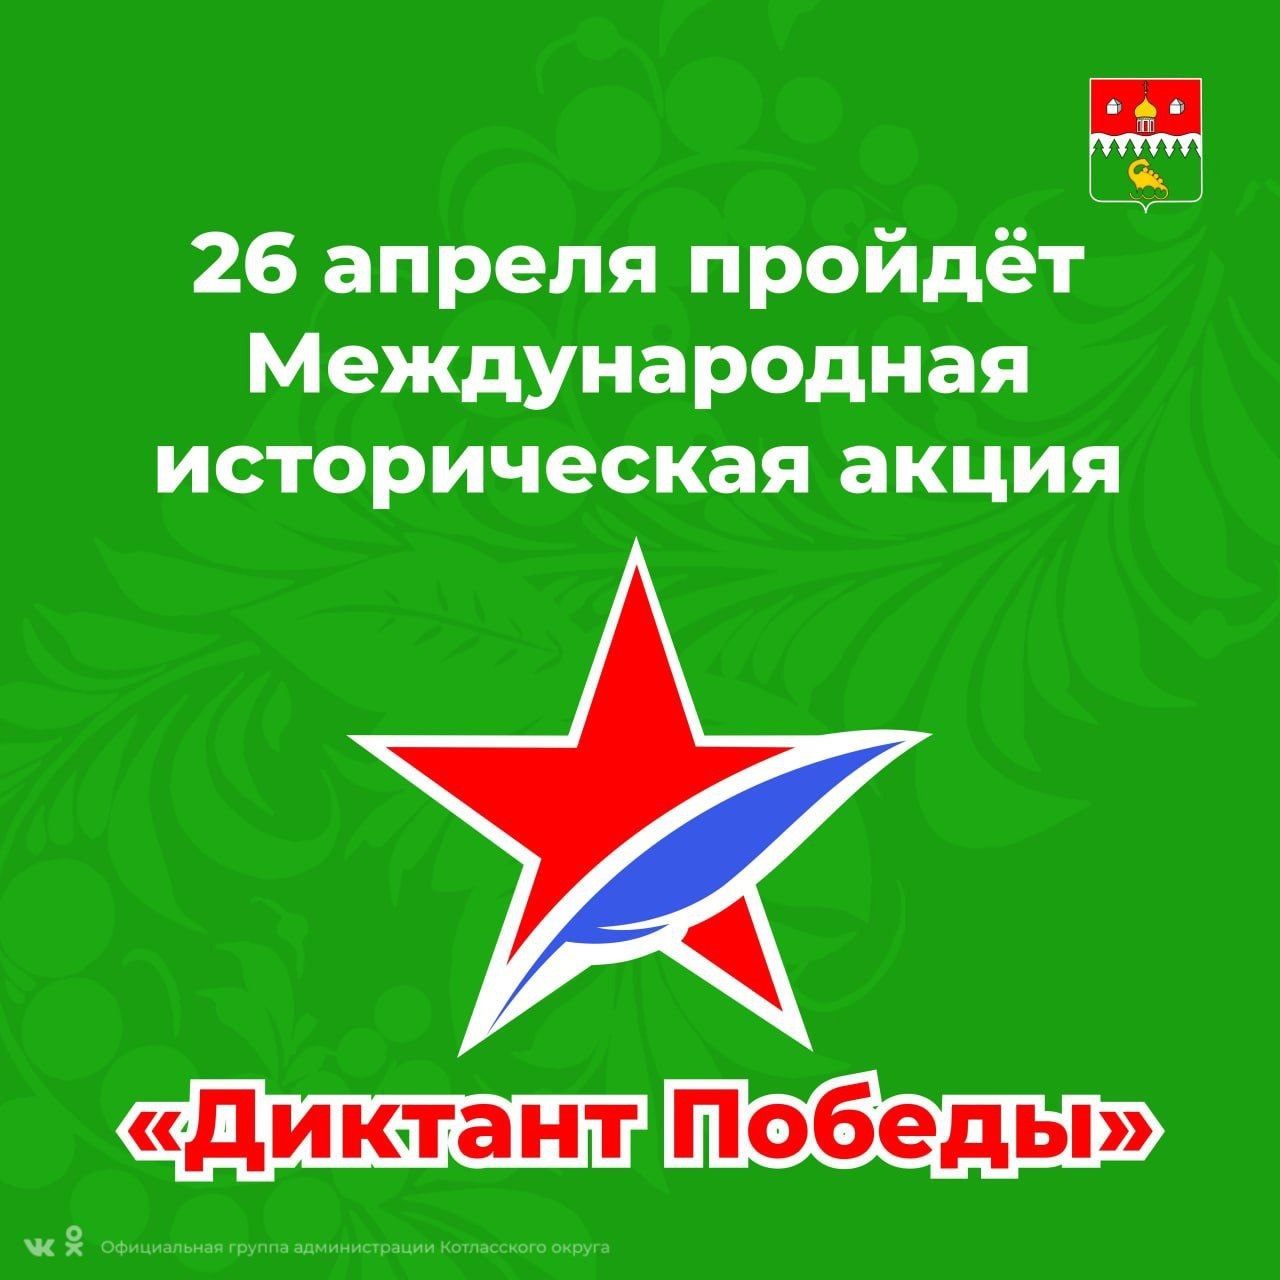 26 апреля партия «Единая Россия» проведет ежегодную Международную историческую акцию «Диктант Победы».